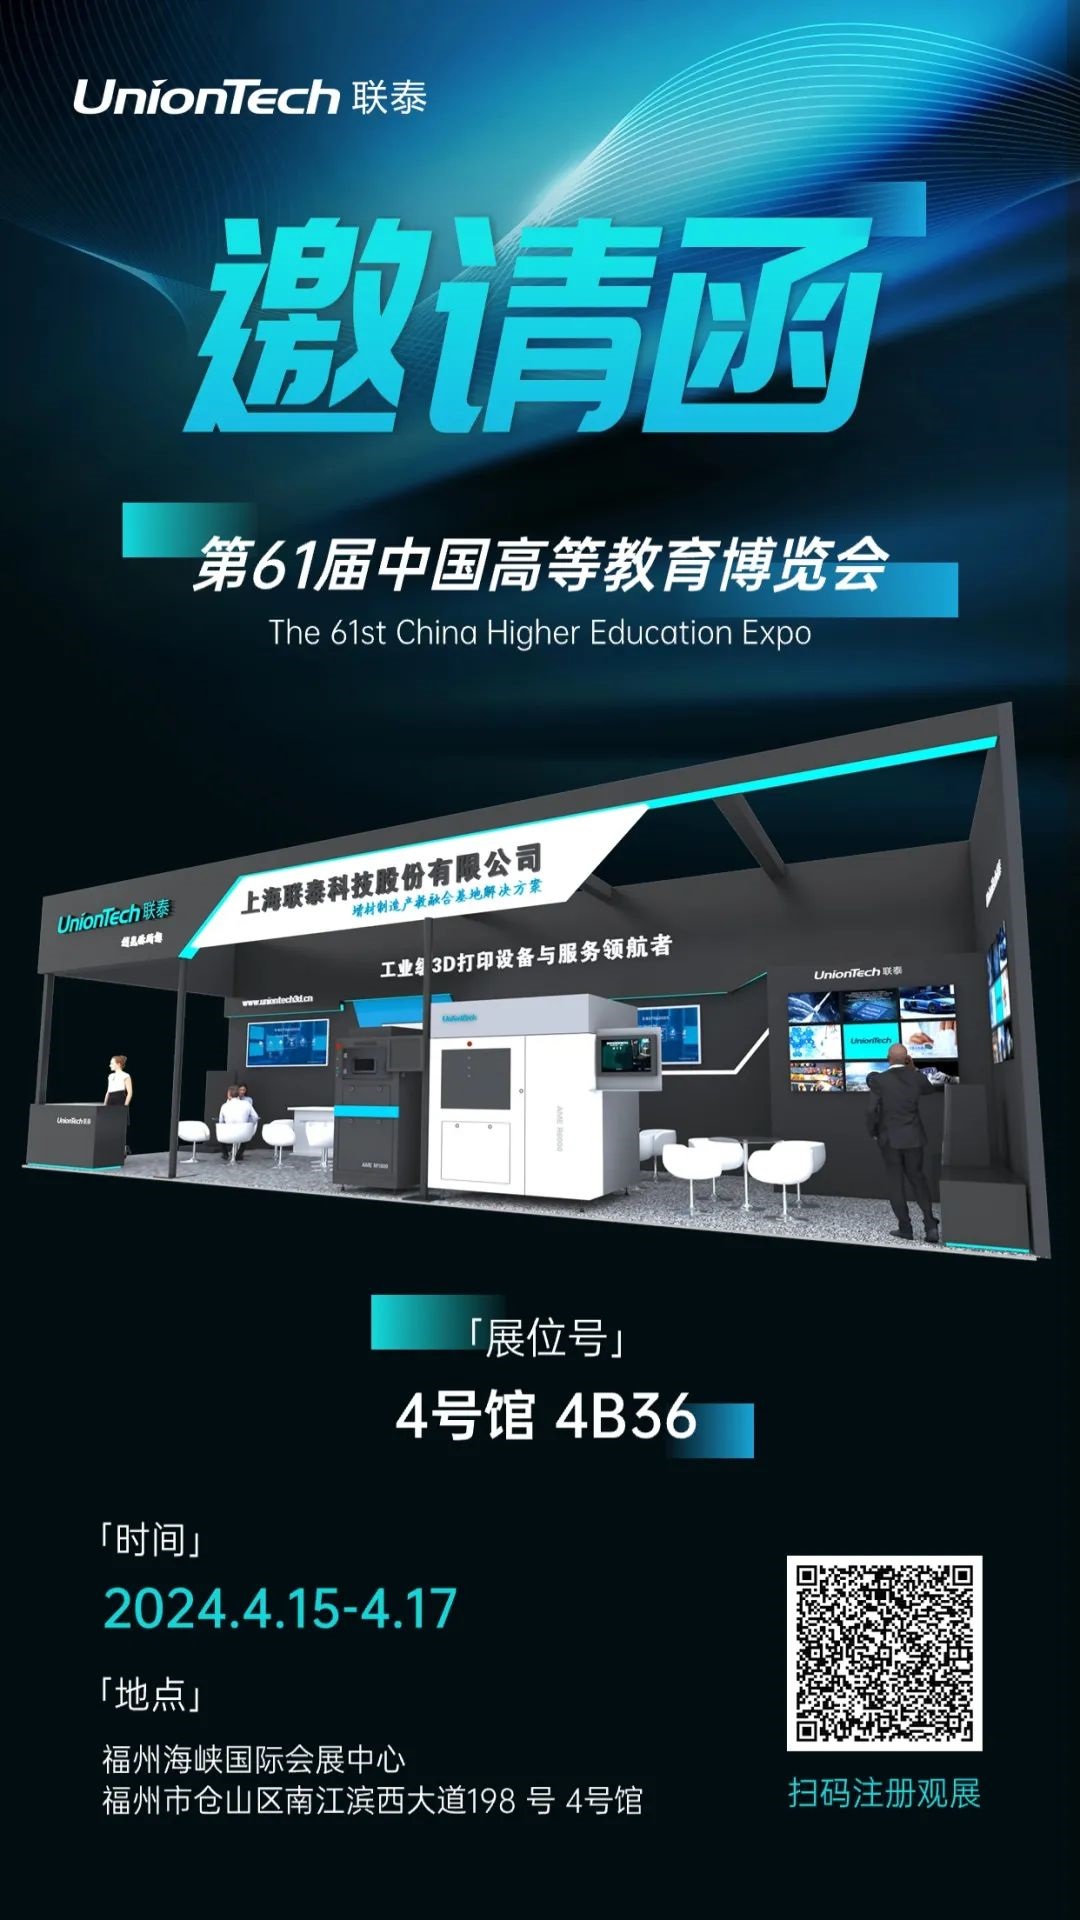 联泰科技邀您共赴第61届中国高等教育博览会